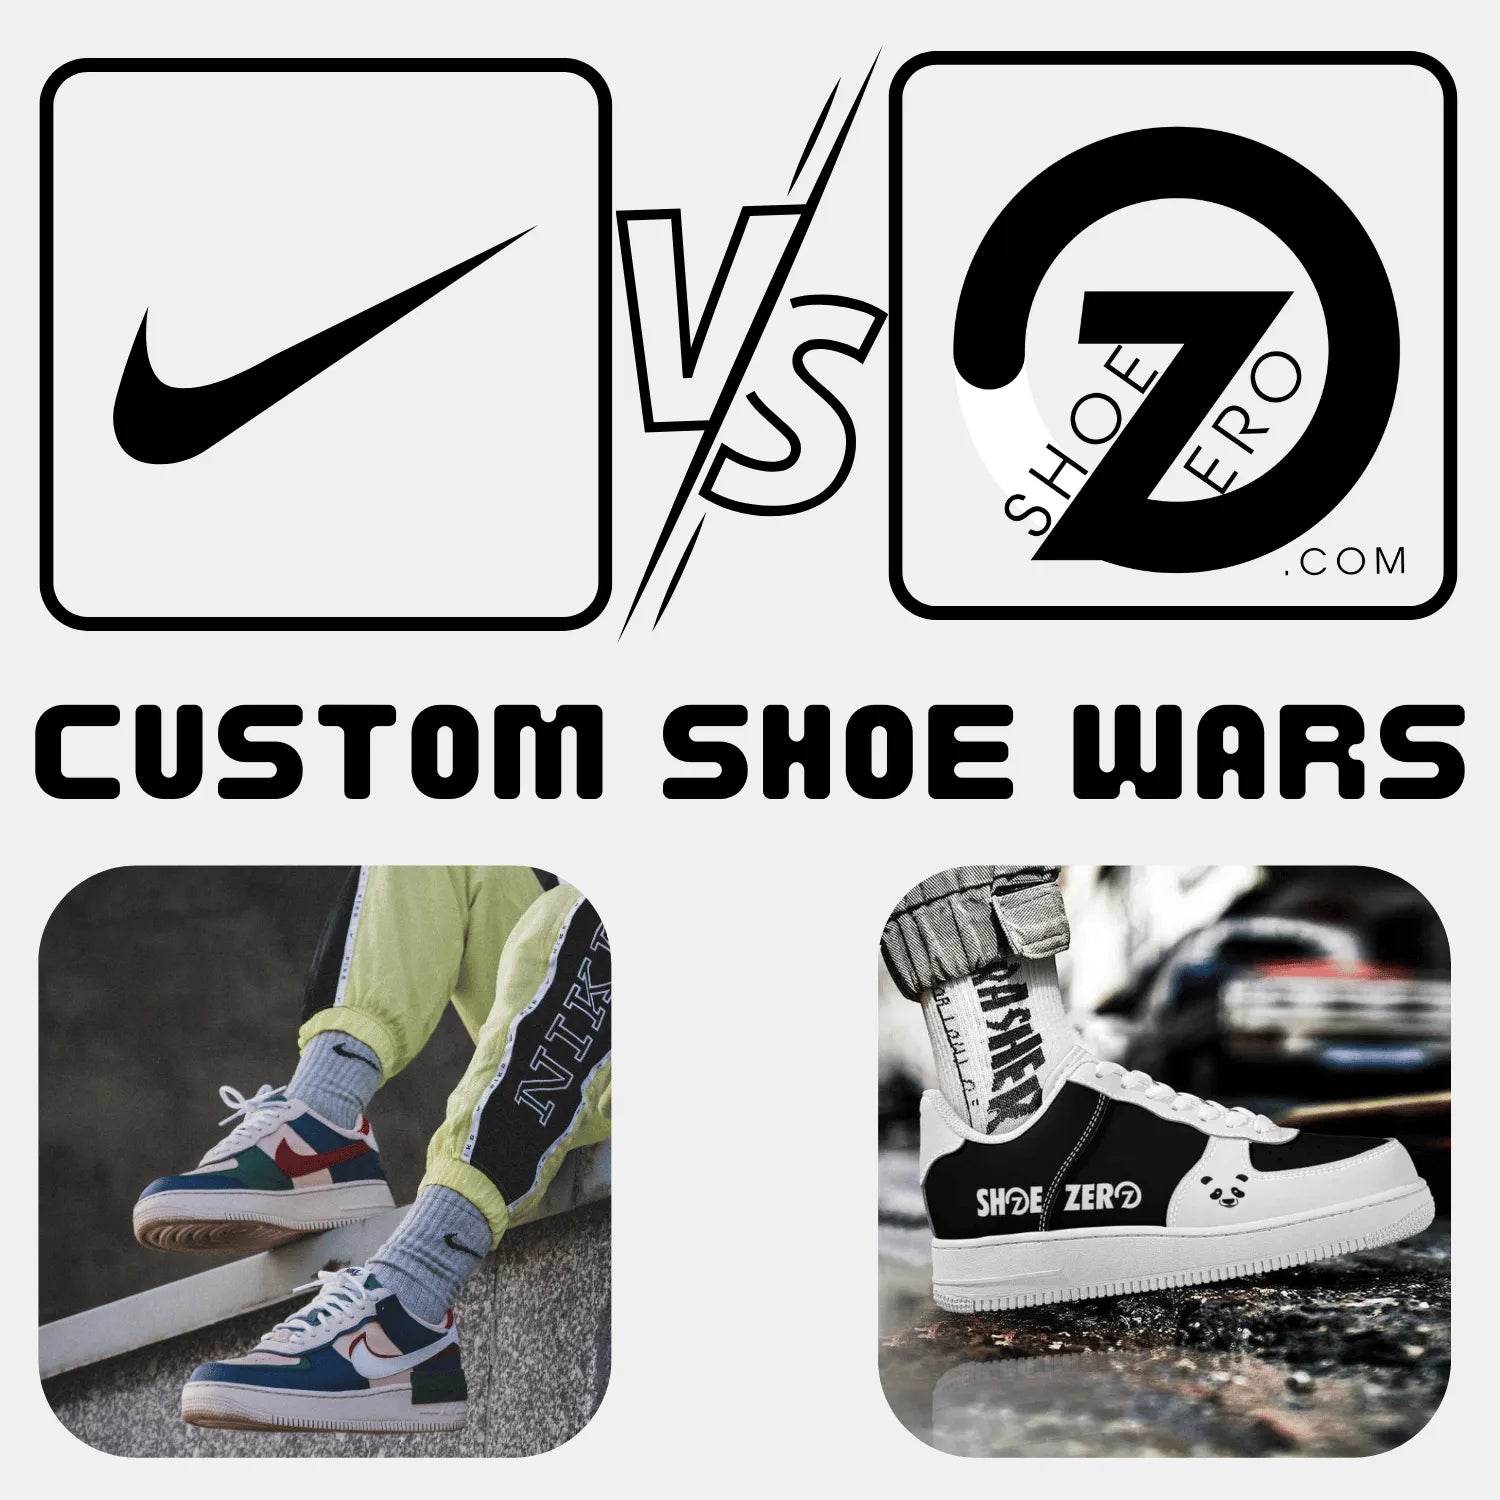 Customize Shoe - Nike Vs Shoe Zero | Custom Shoe War - Shoe Zero